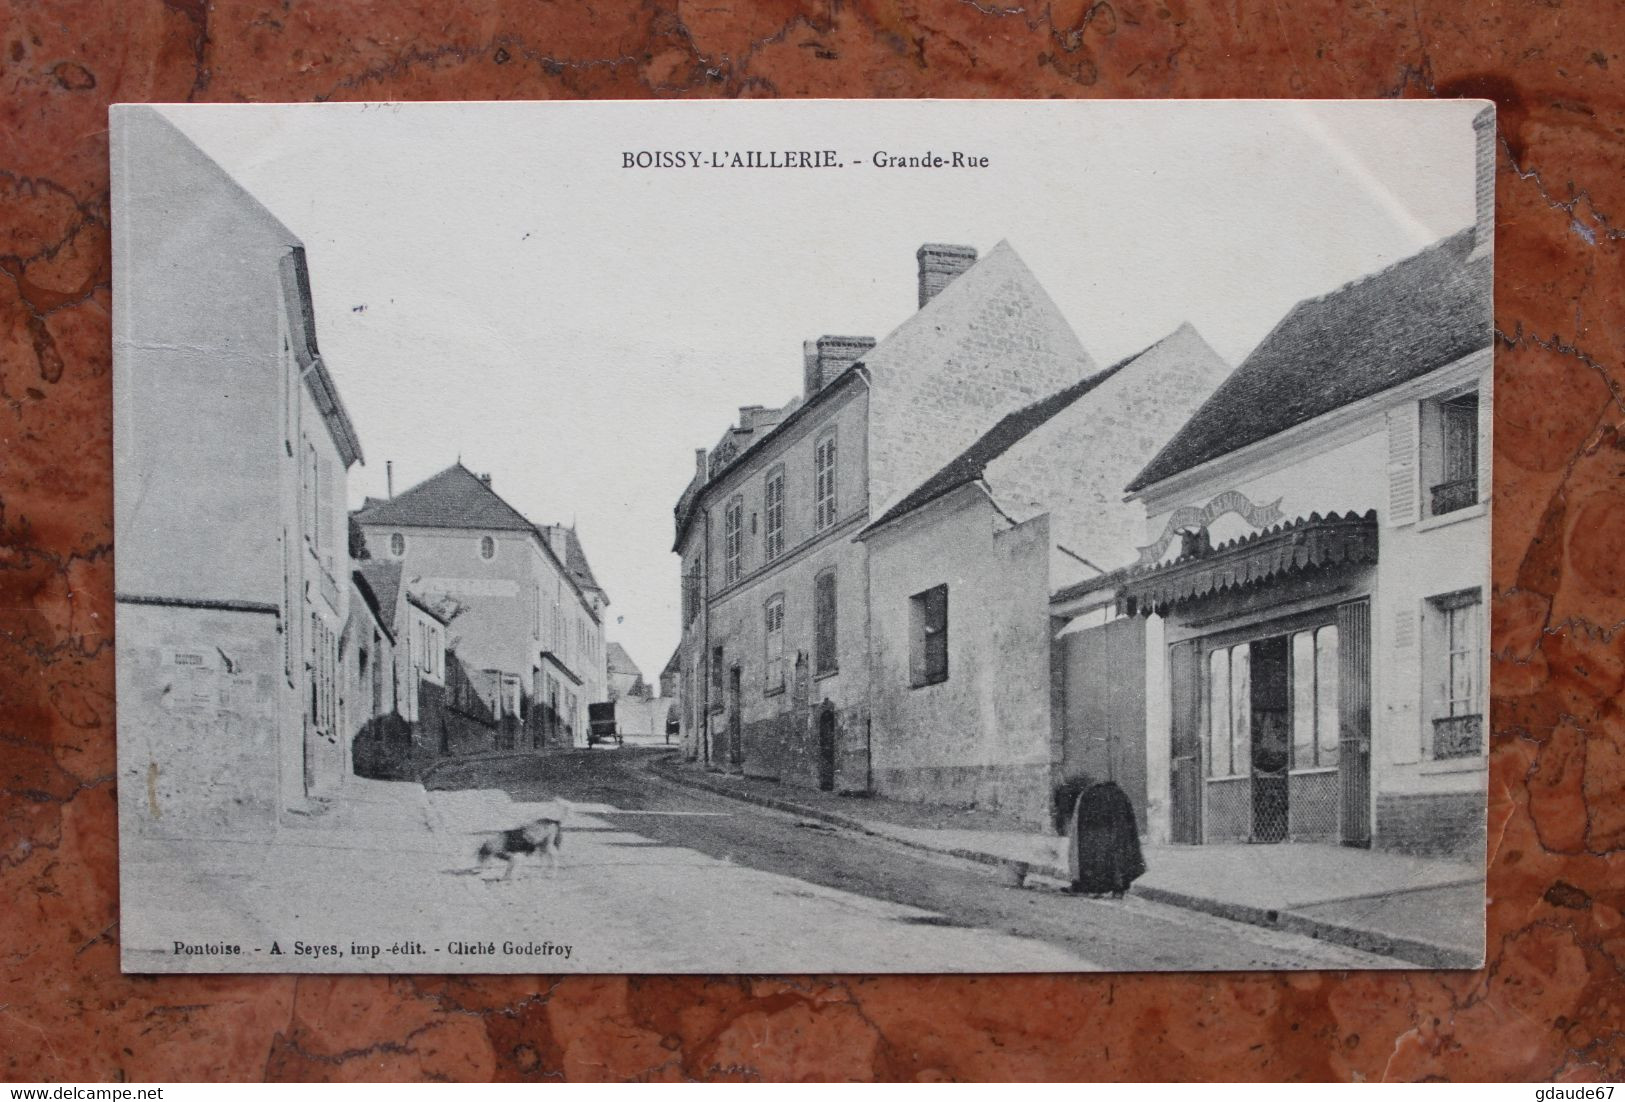 BOISSY-L'AILLERIE (95) GRANDE-RUE - Boissy-l'Aillerie